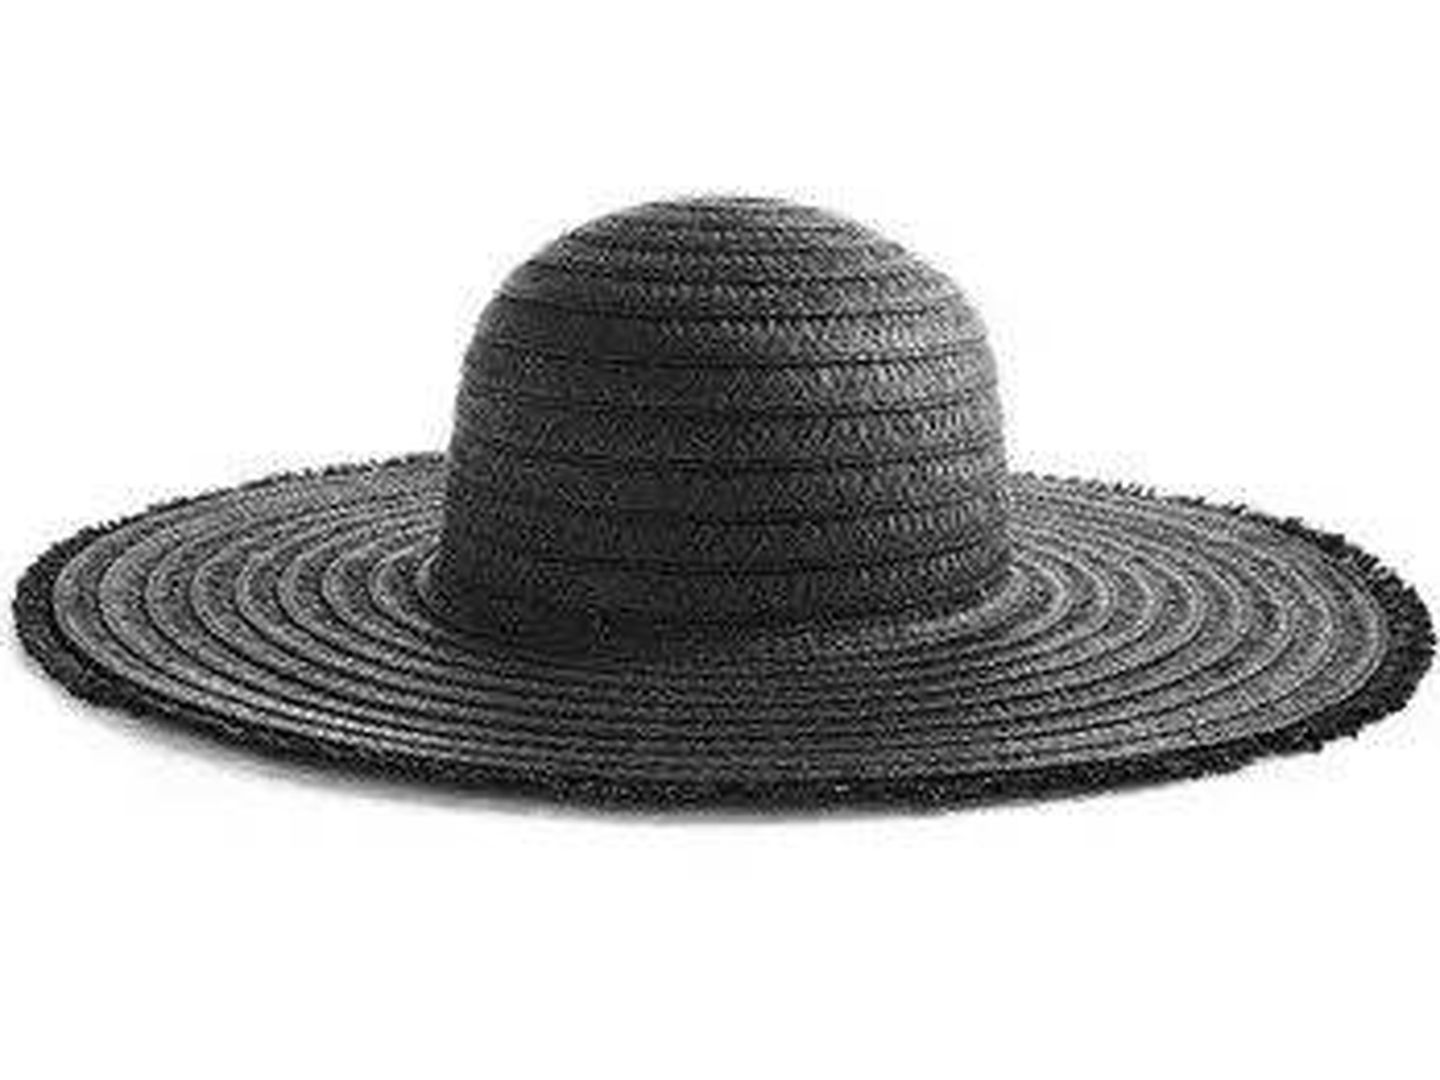 Sombrero de paja de Primark. (Cortesía)